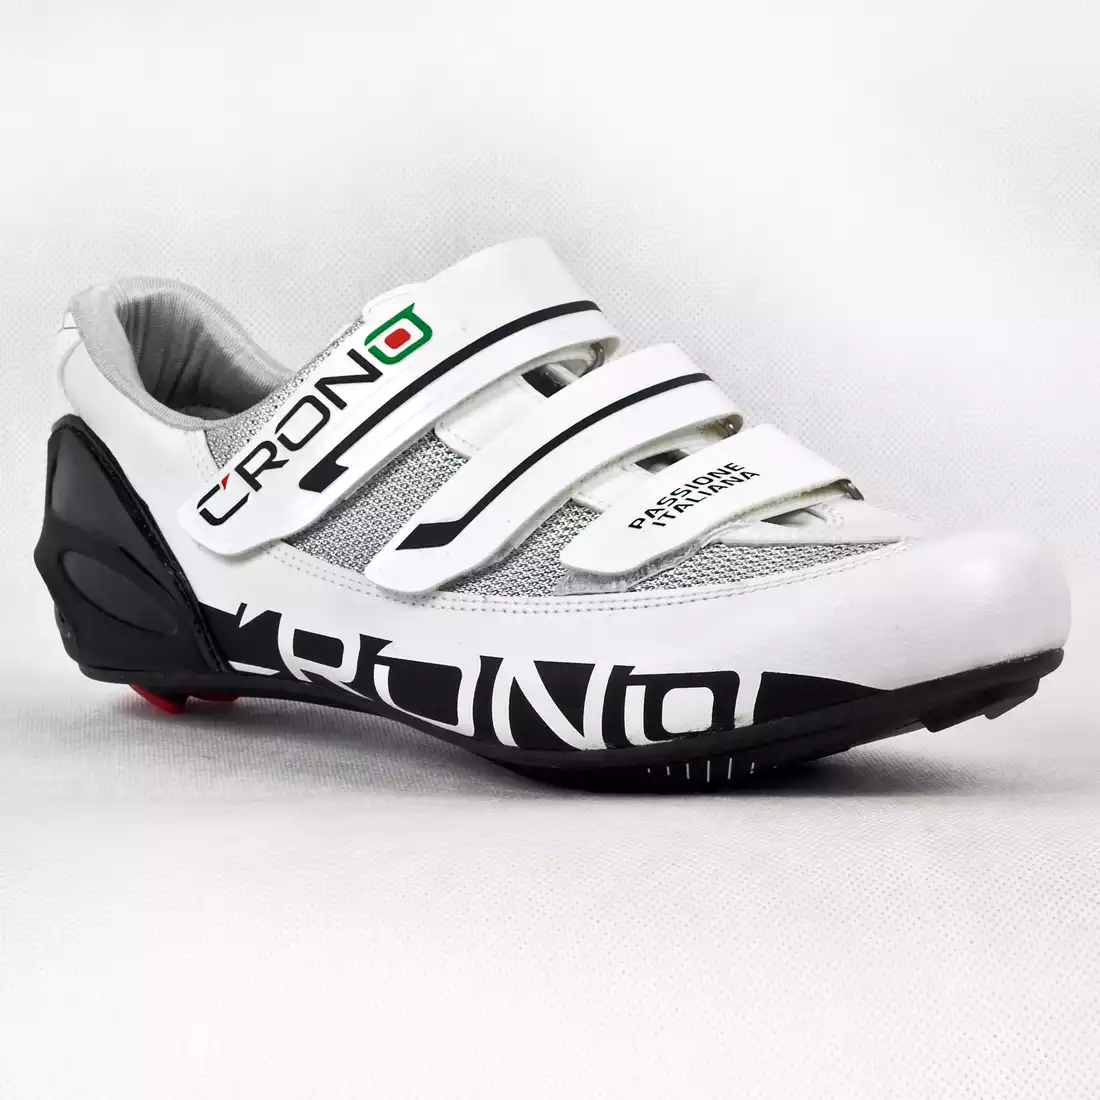 CRONO PERLA CARBON - buty rowerowe szosowe - kolor: Biały